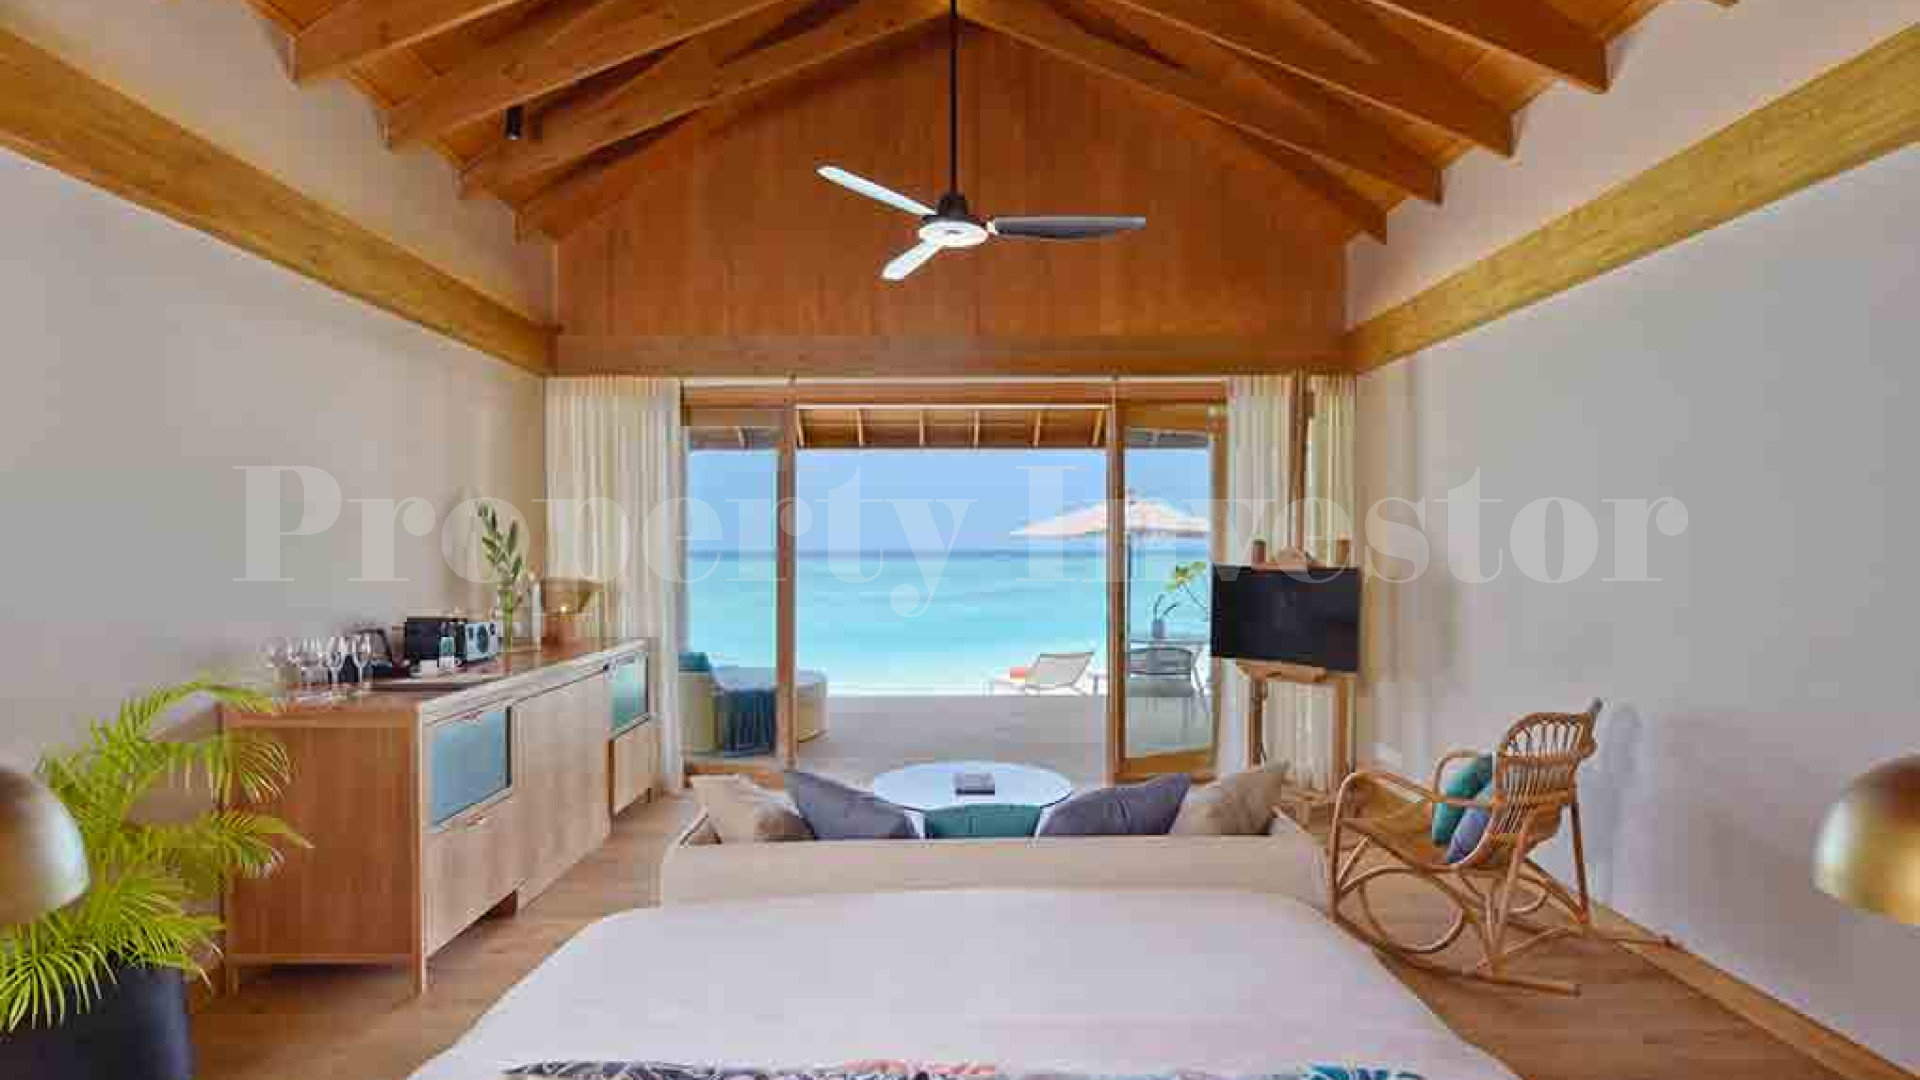 Популярный 5* роскошный островной отель на 80 номеров на Мальдивах